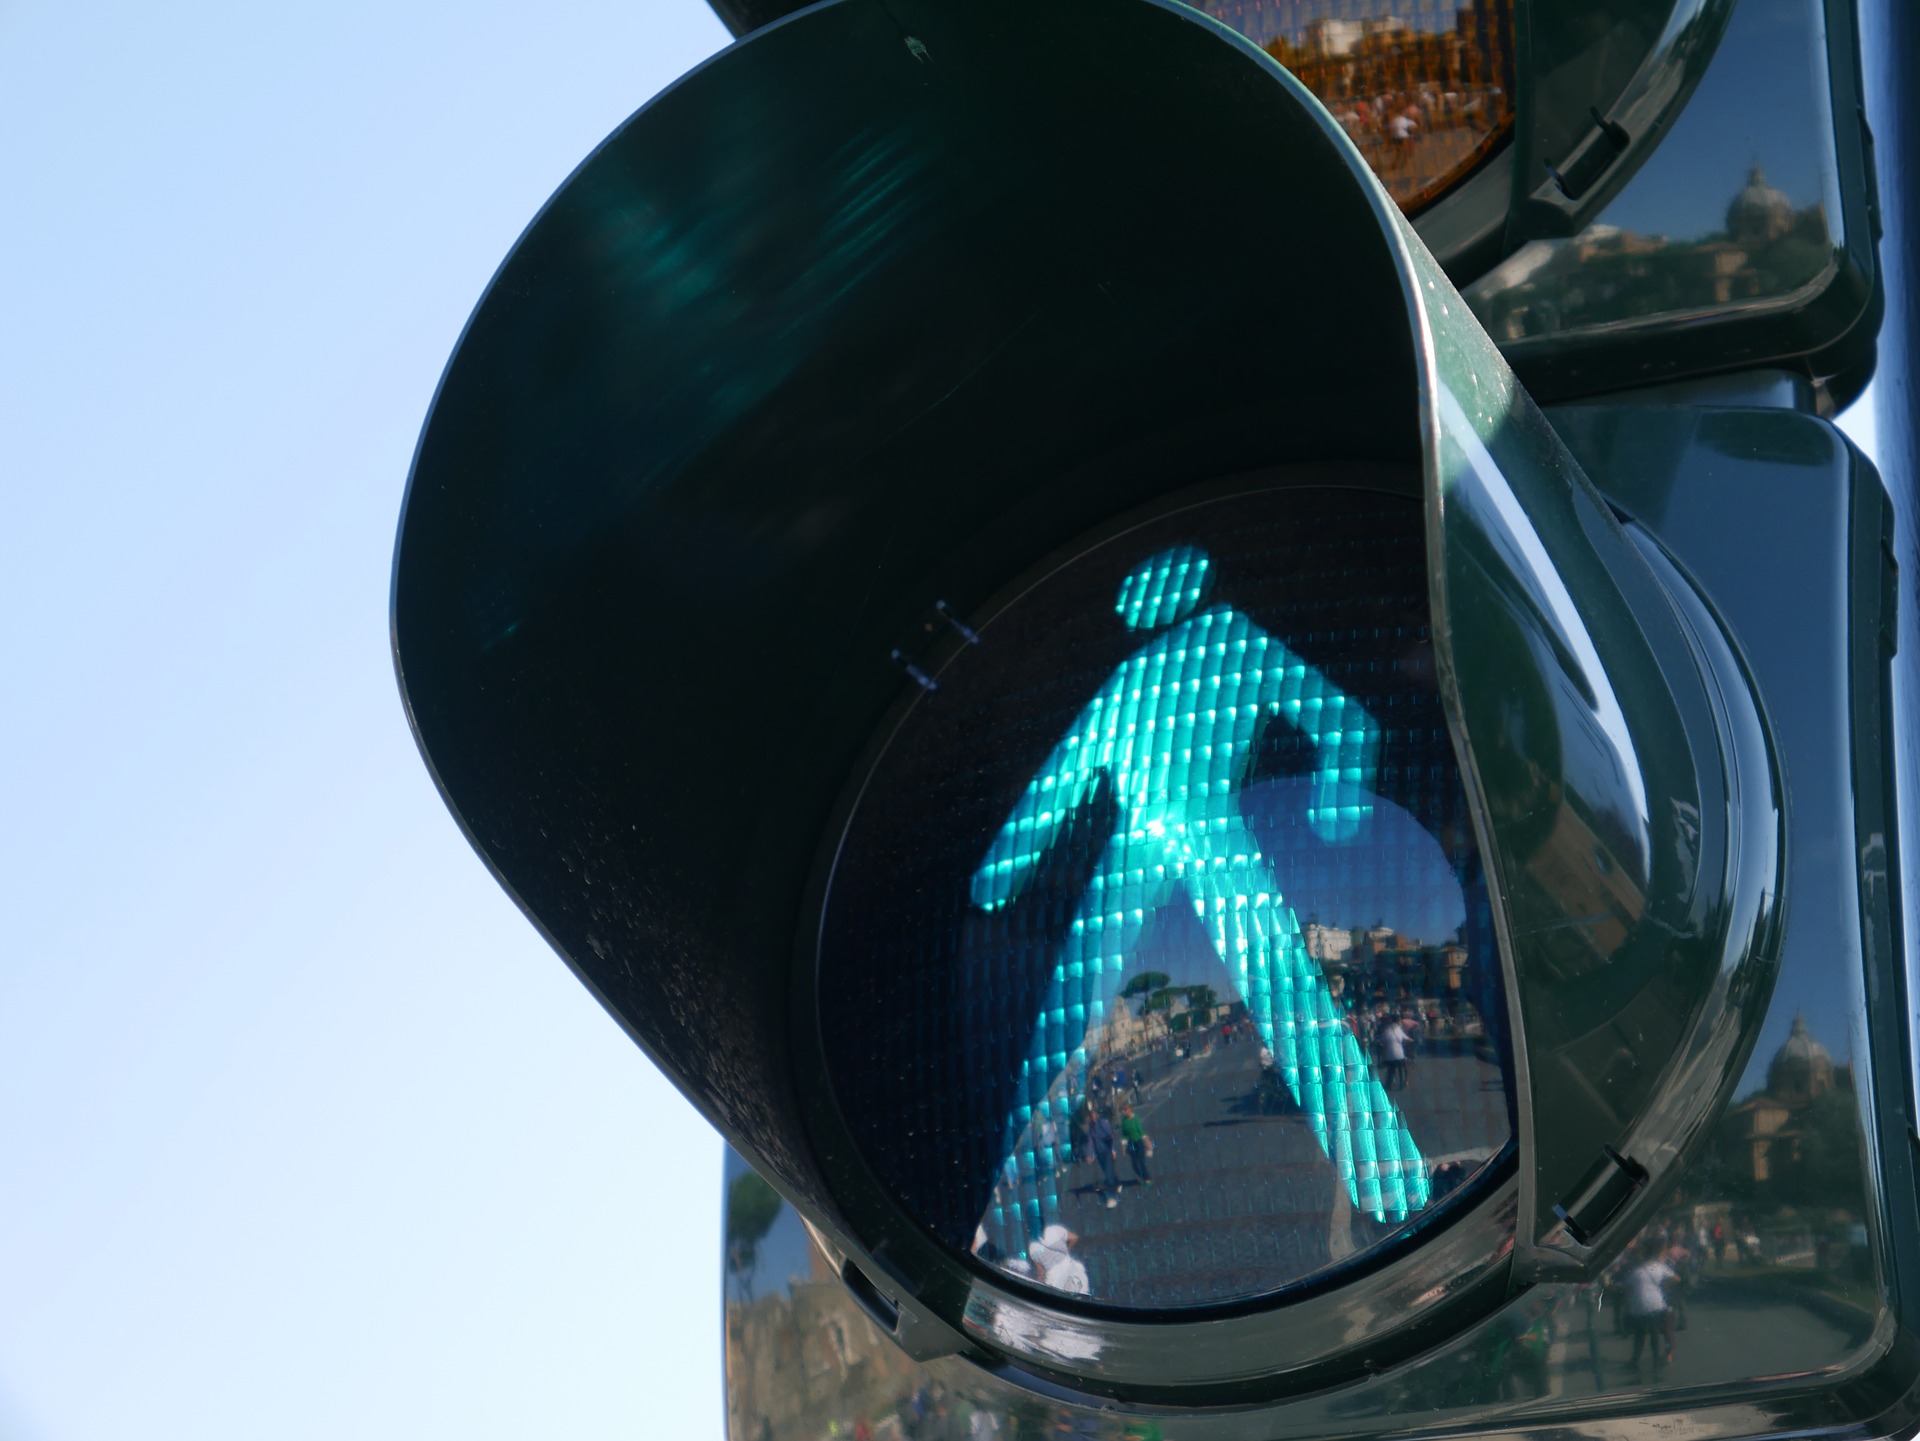 Zielone światło dla pieszych włączy się automatycznie